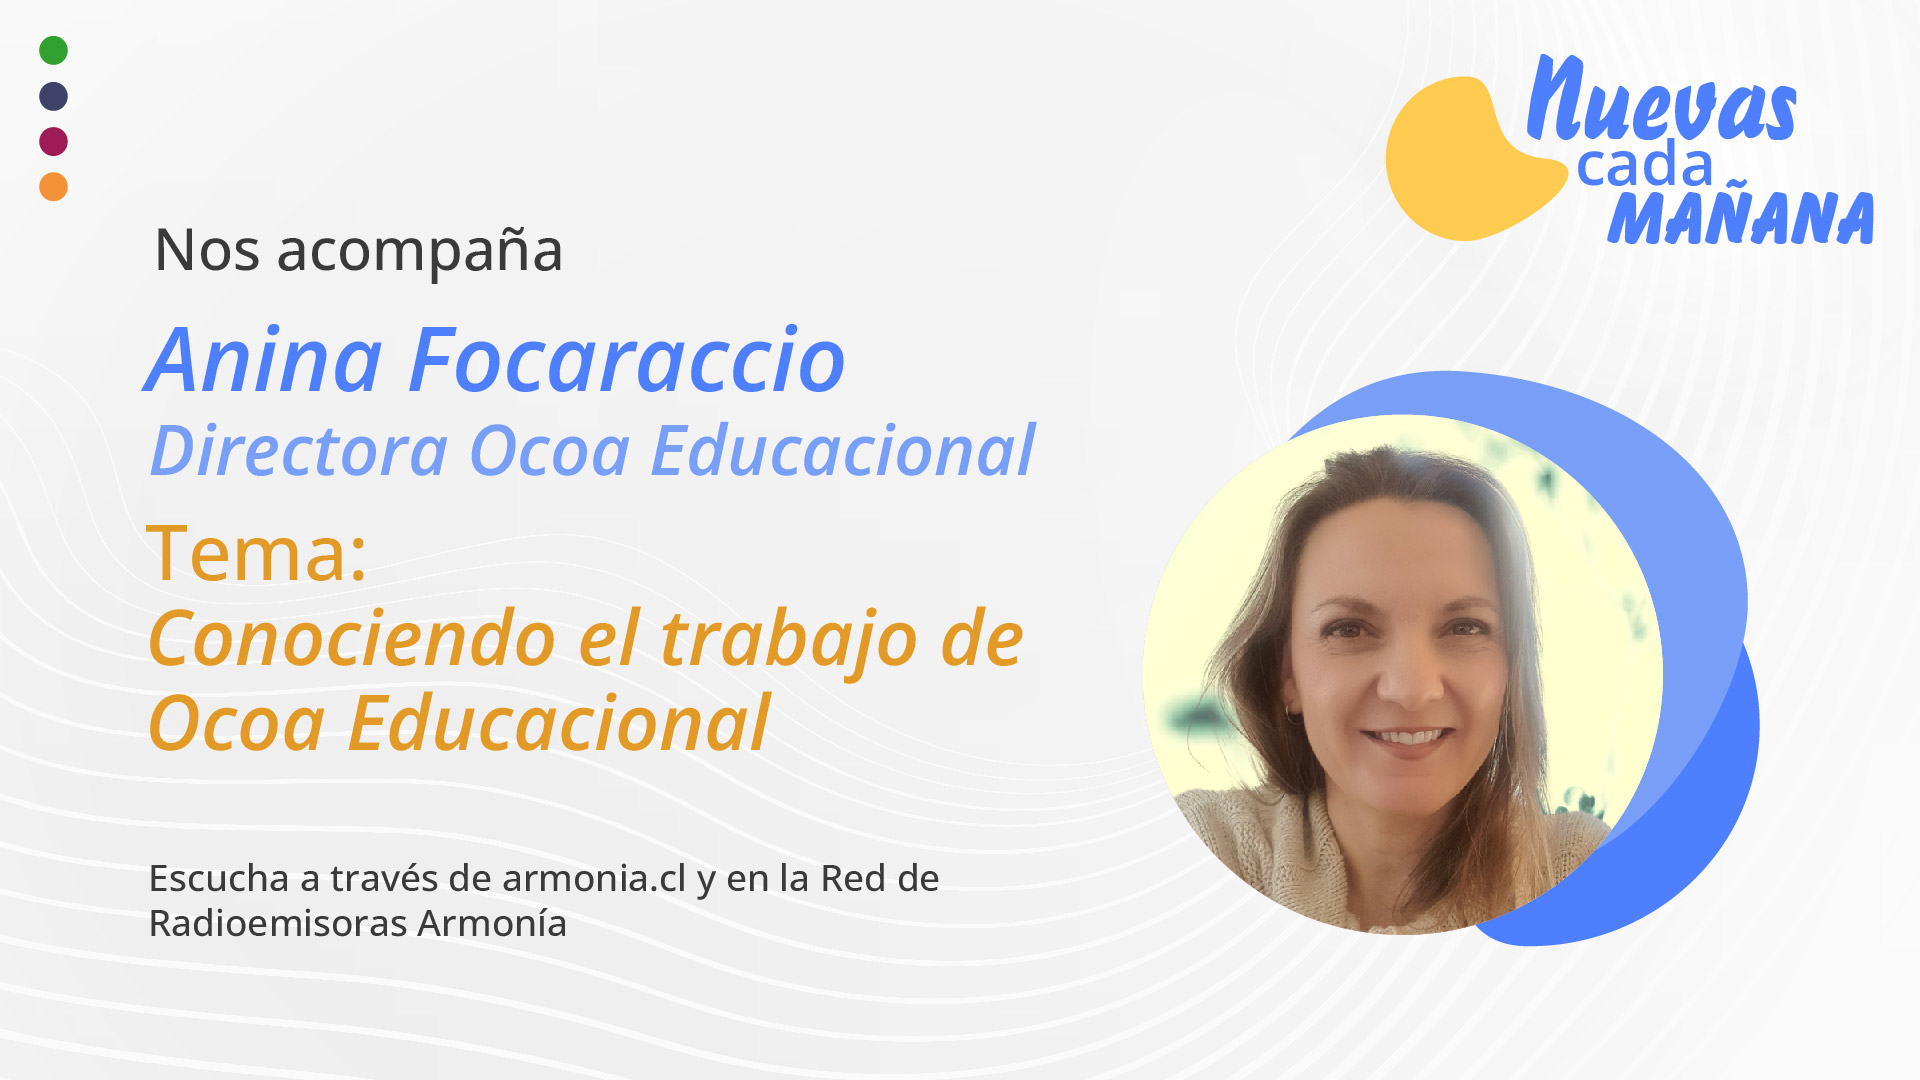 El Trabajo de OCOA Educacional - Entrevista a Anina Focaraccio